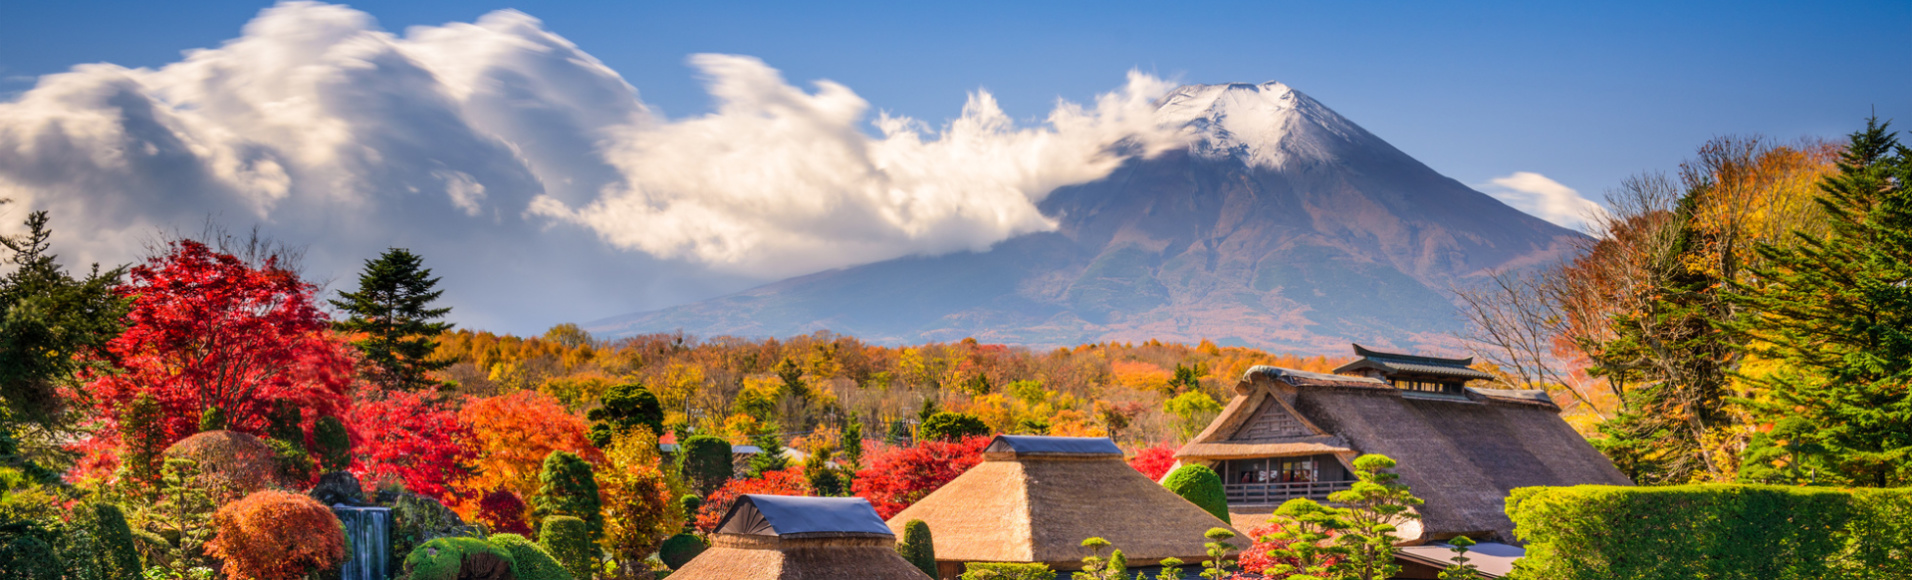 Mt. Fuji et village traditonnel à Oshinohakkai, Japon